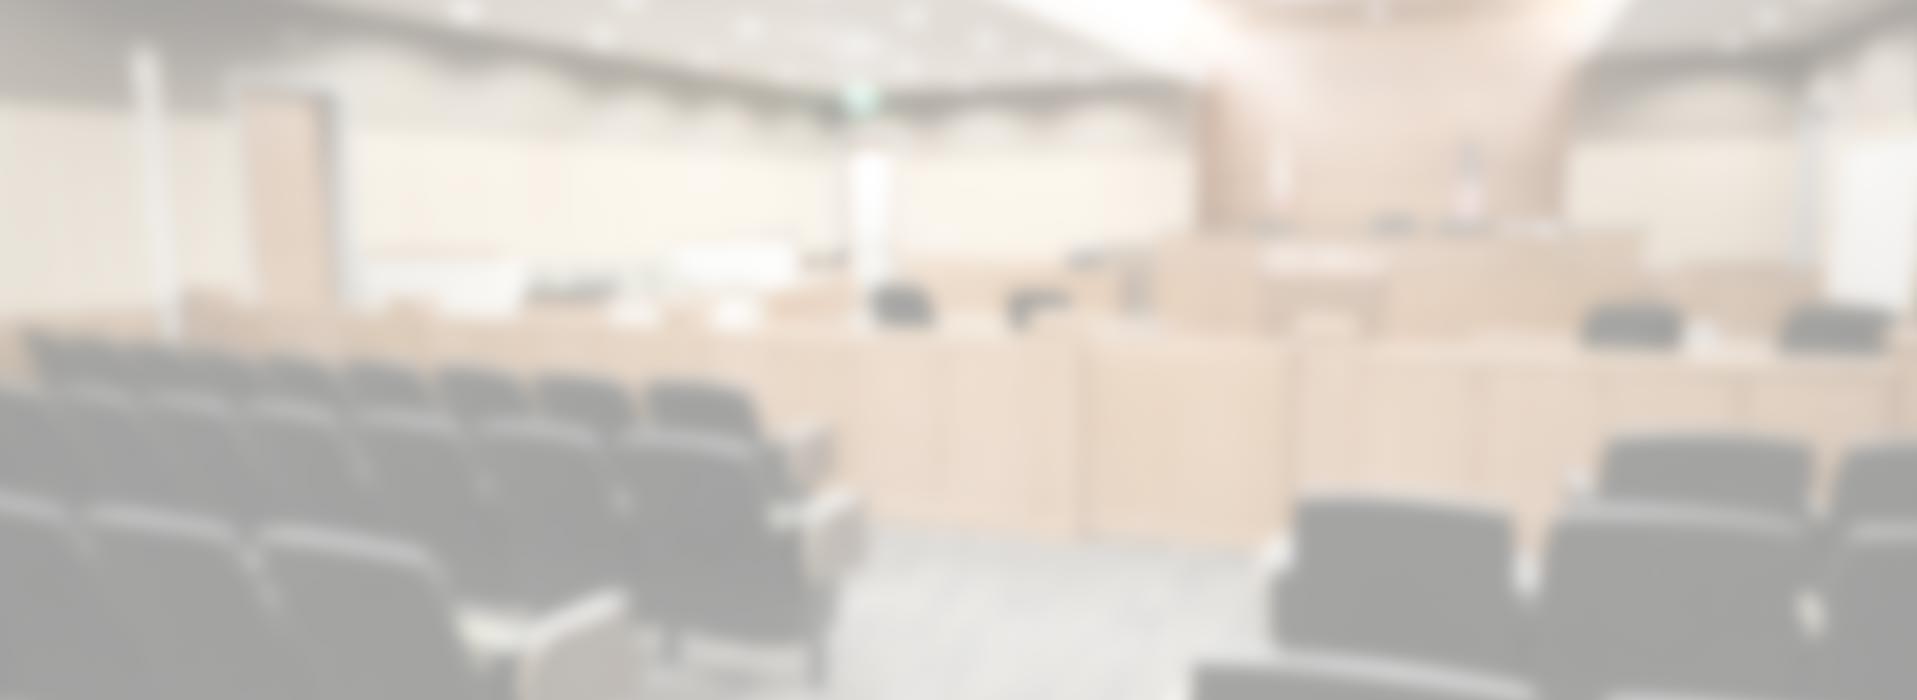 steve-brian-davis-san-diego-attorney-at-law-slider-courtroom